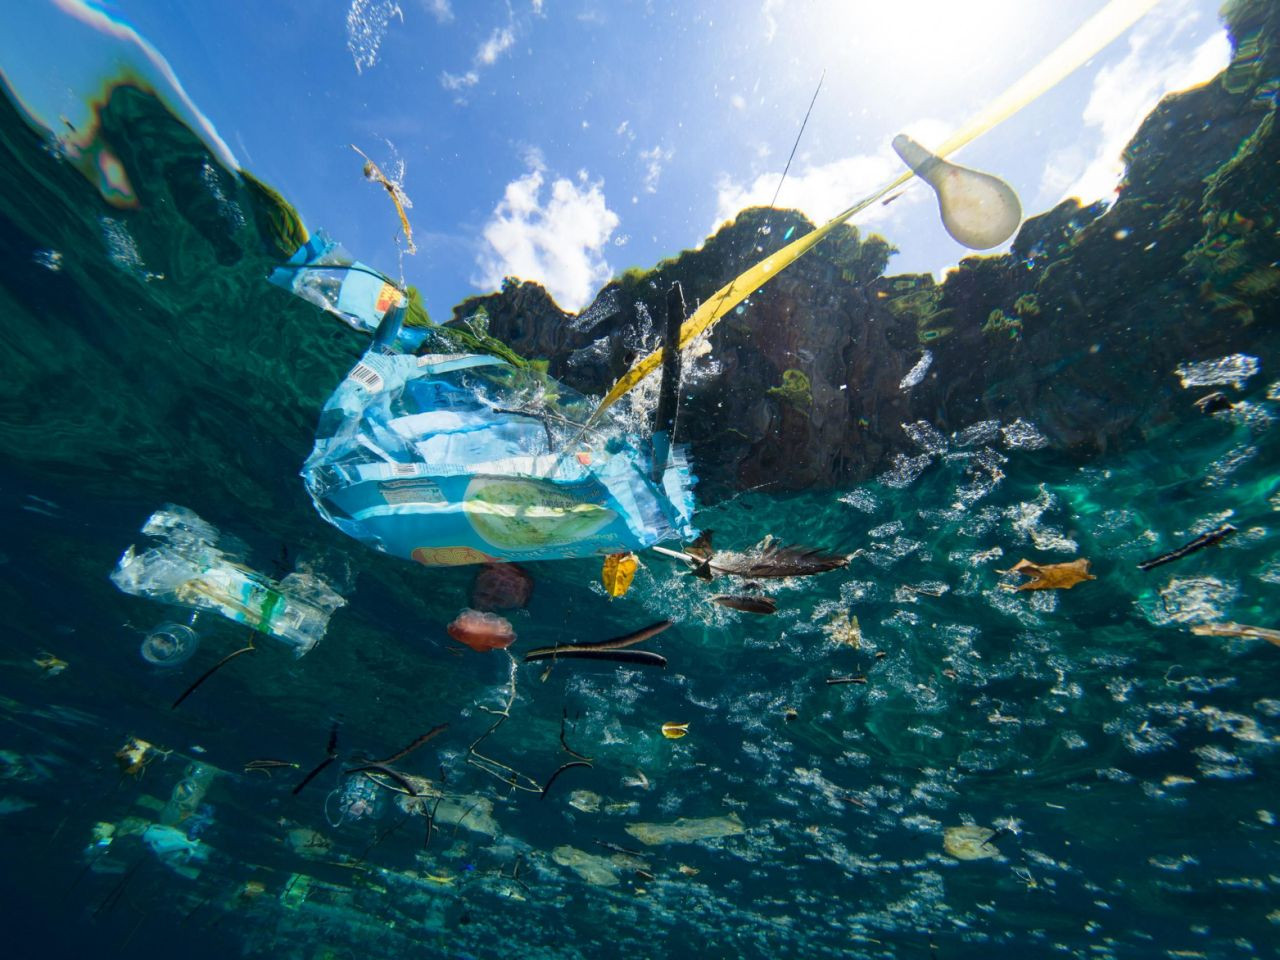 Το 50% των απορριμμάτων των ελληνικών θαλασσών είναι κουτιά, μπουκάλια και σακούλες